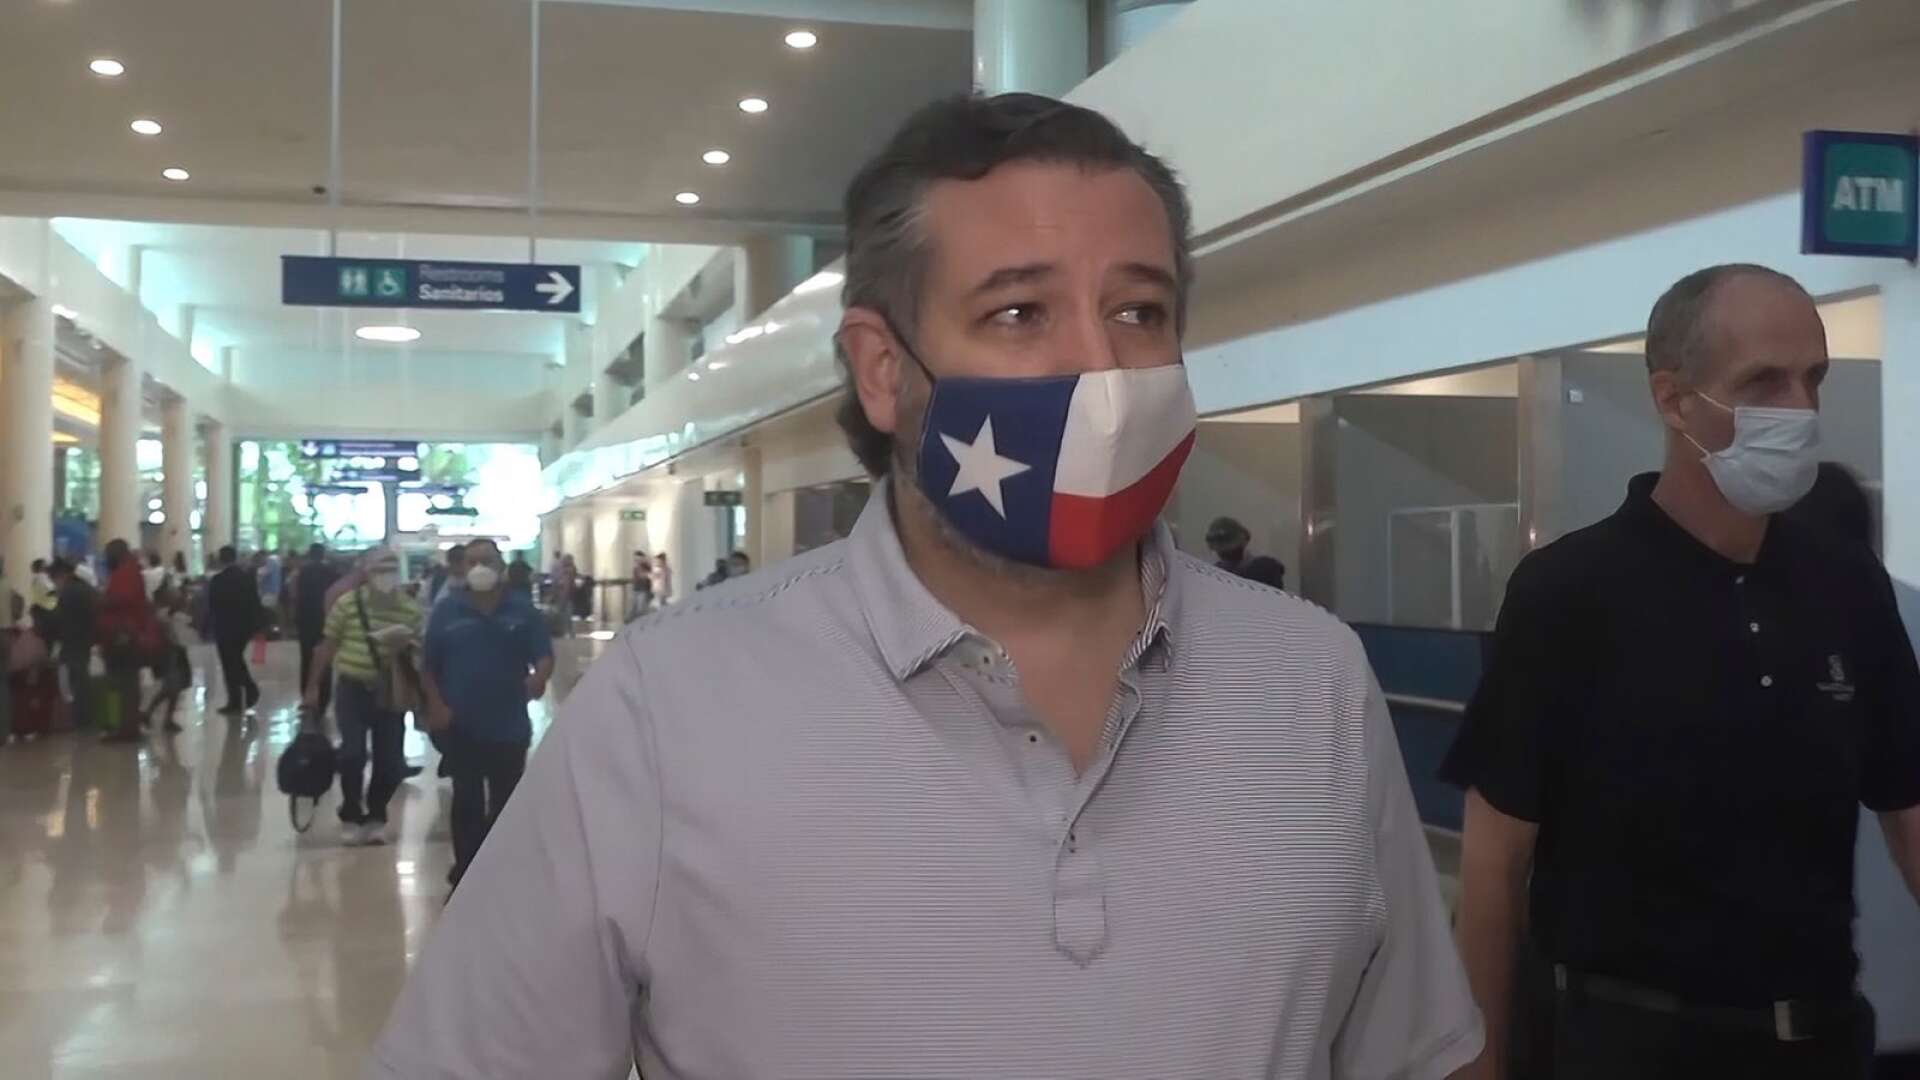 Den republikanske senatorn Ted Cruz hamnade i blåsväder när det kom fram att han lämnat sin delstat Texas under den kraftiga snöstormen i mitten av februari för att semestra i värmen i Cancun tillsammans med sin familj. När det blir dags för omval 2024 är chansen stor att det traditionellt konservativa Texas har glömt skandalen.